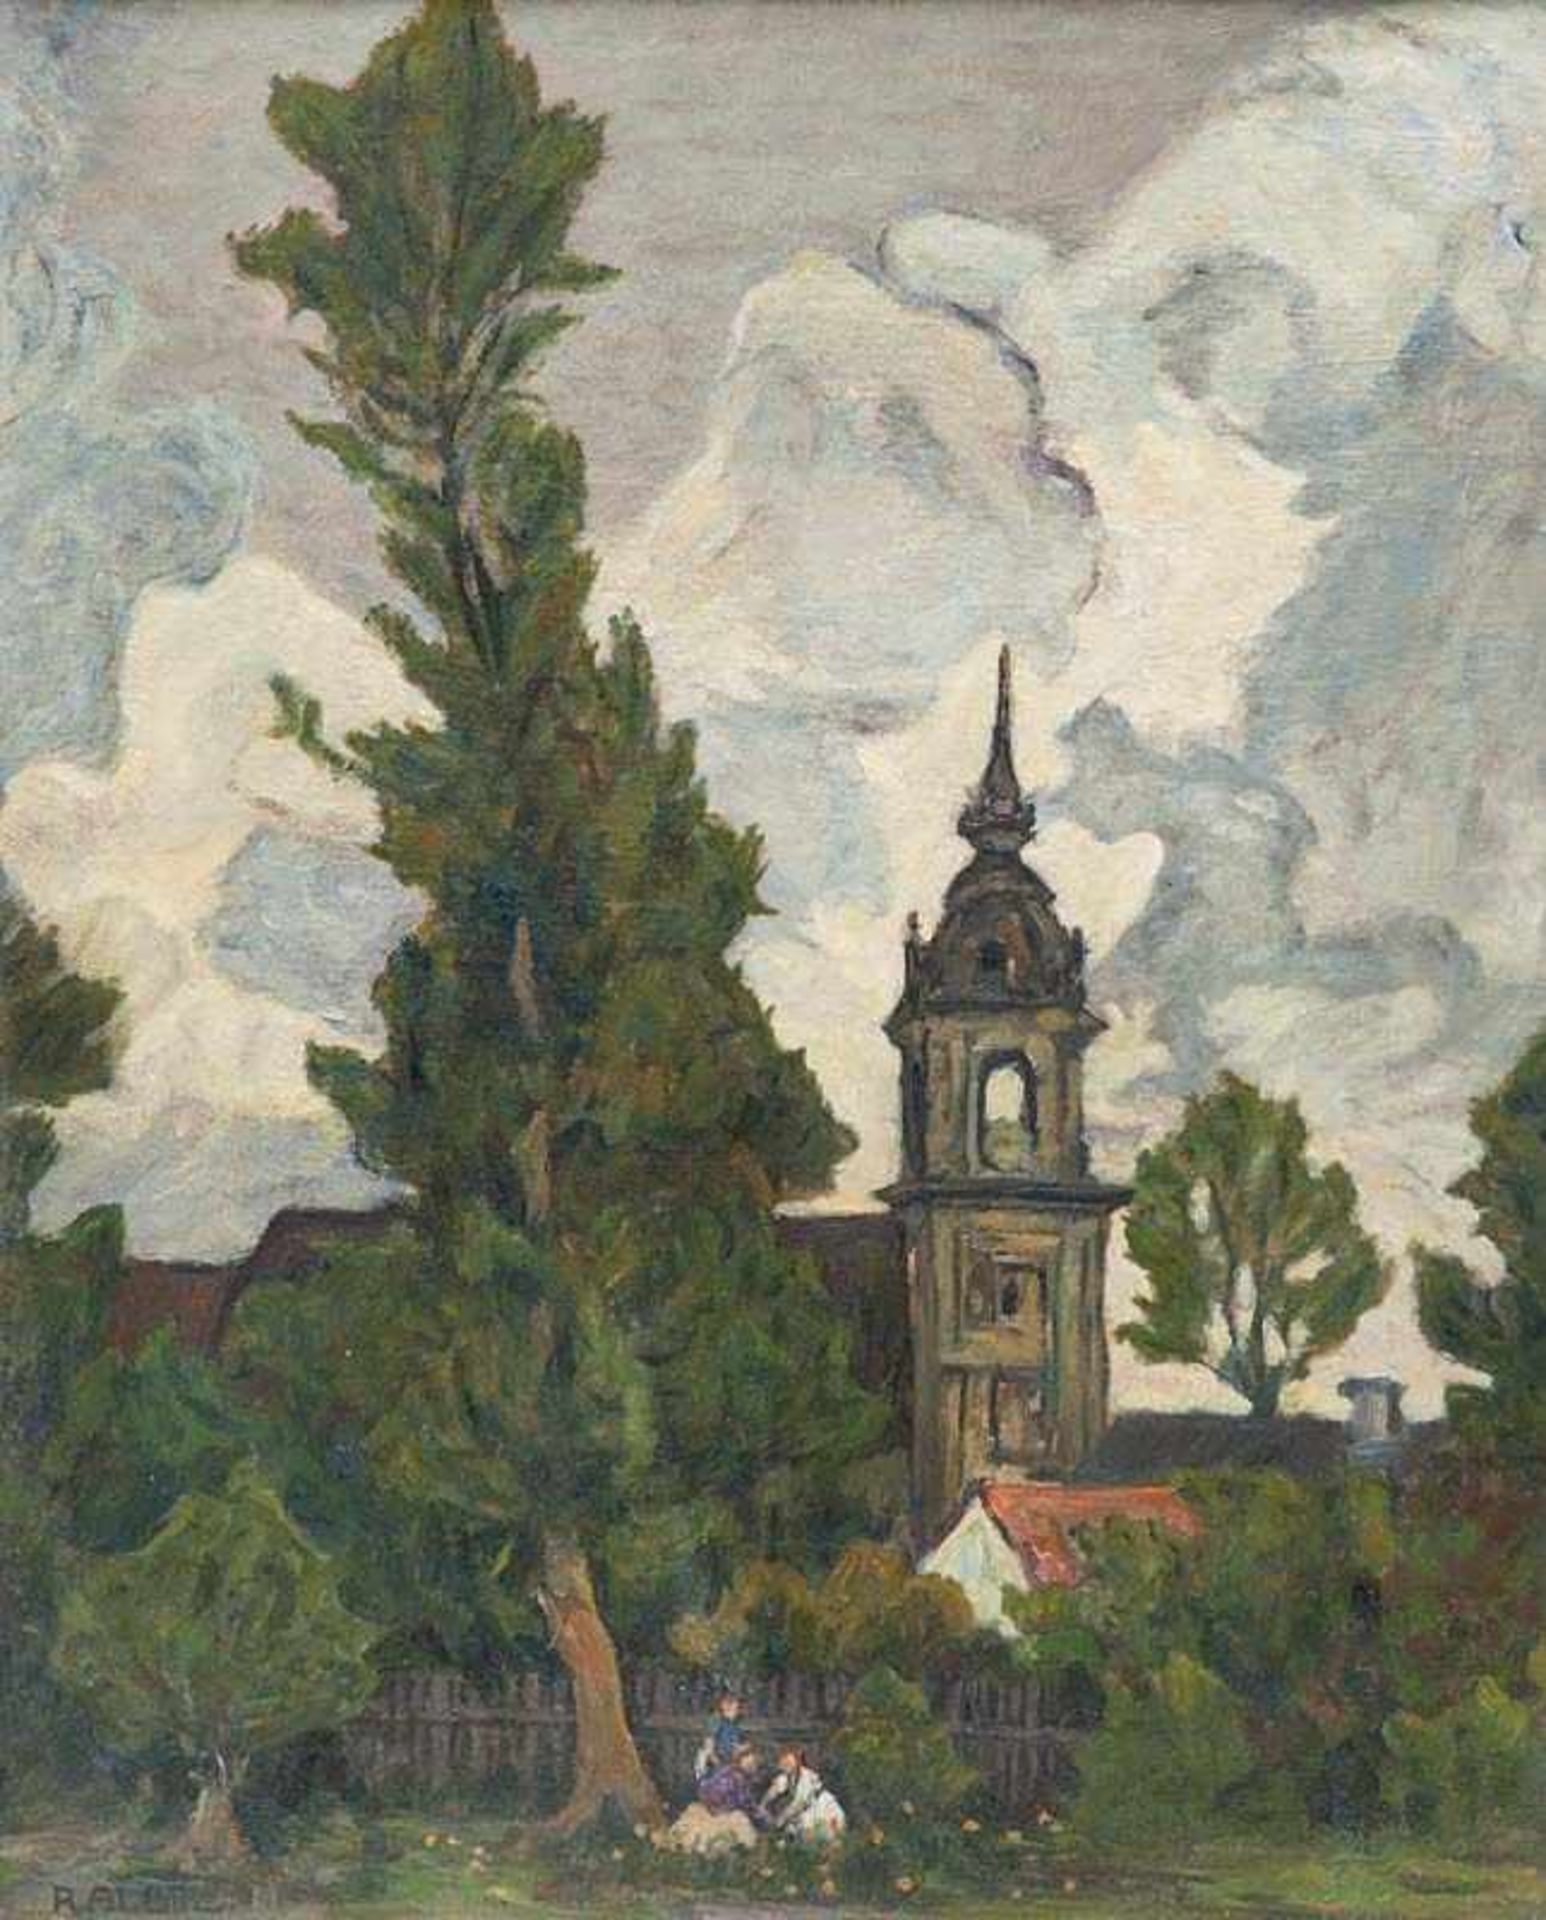 Albitz, Richard. (1876 - 1954 Berlin). Stürmische Landschaft mit Blick auf eine Kirche. Öl auf